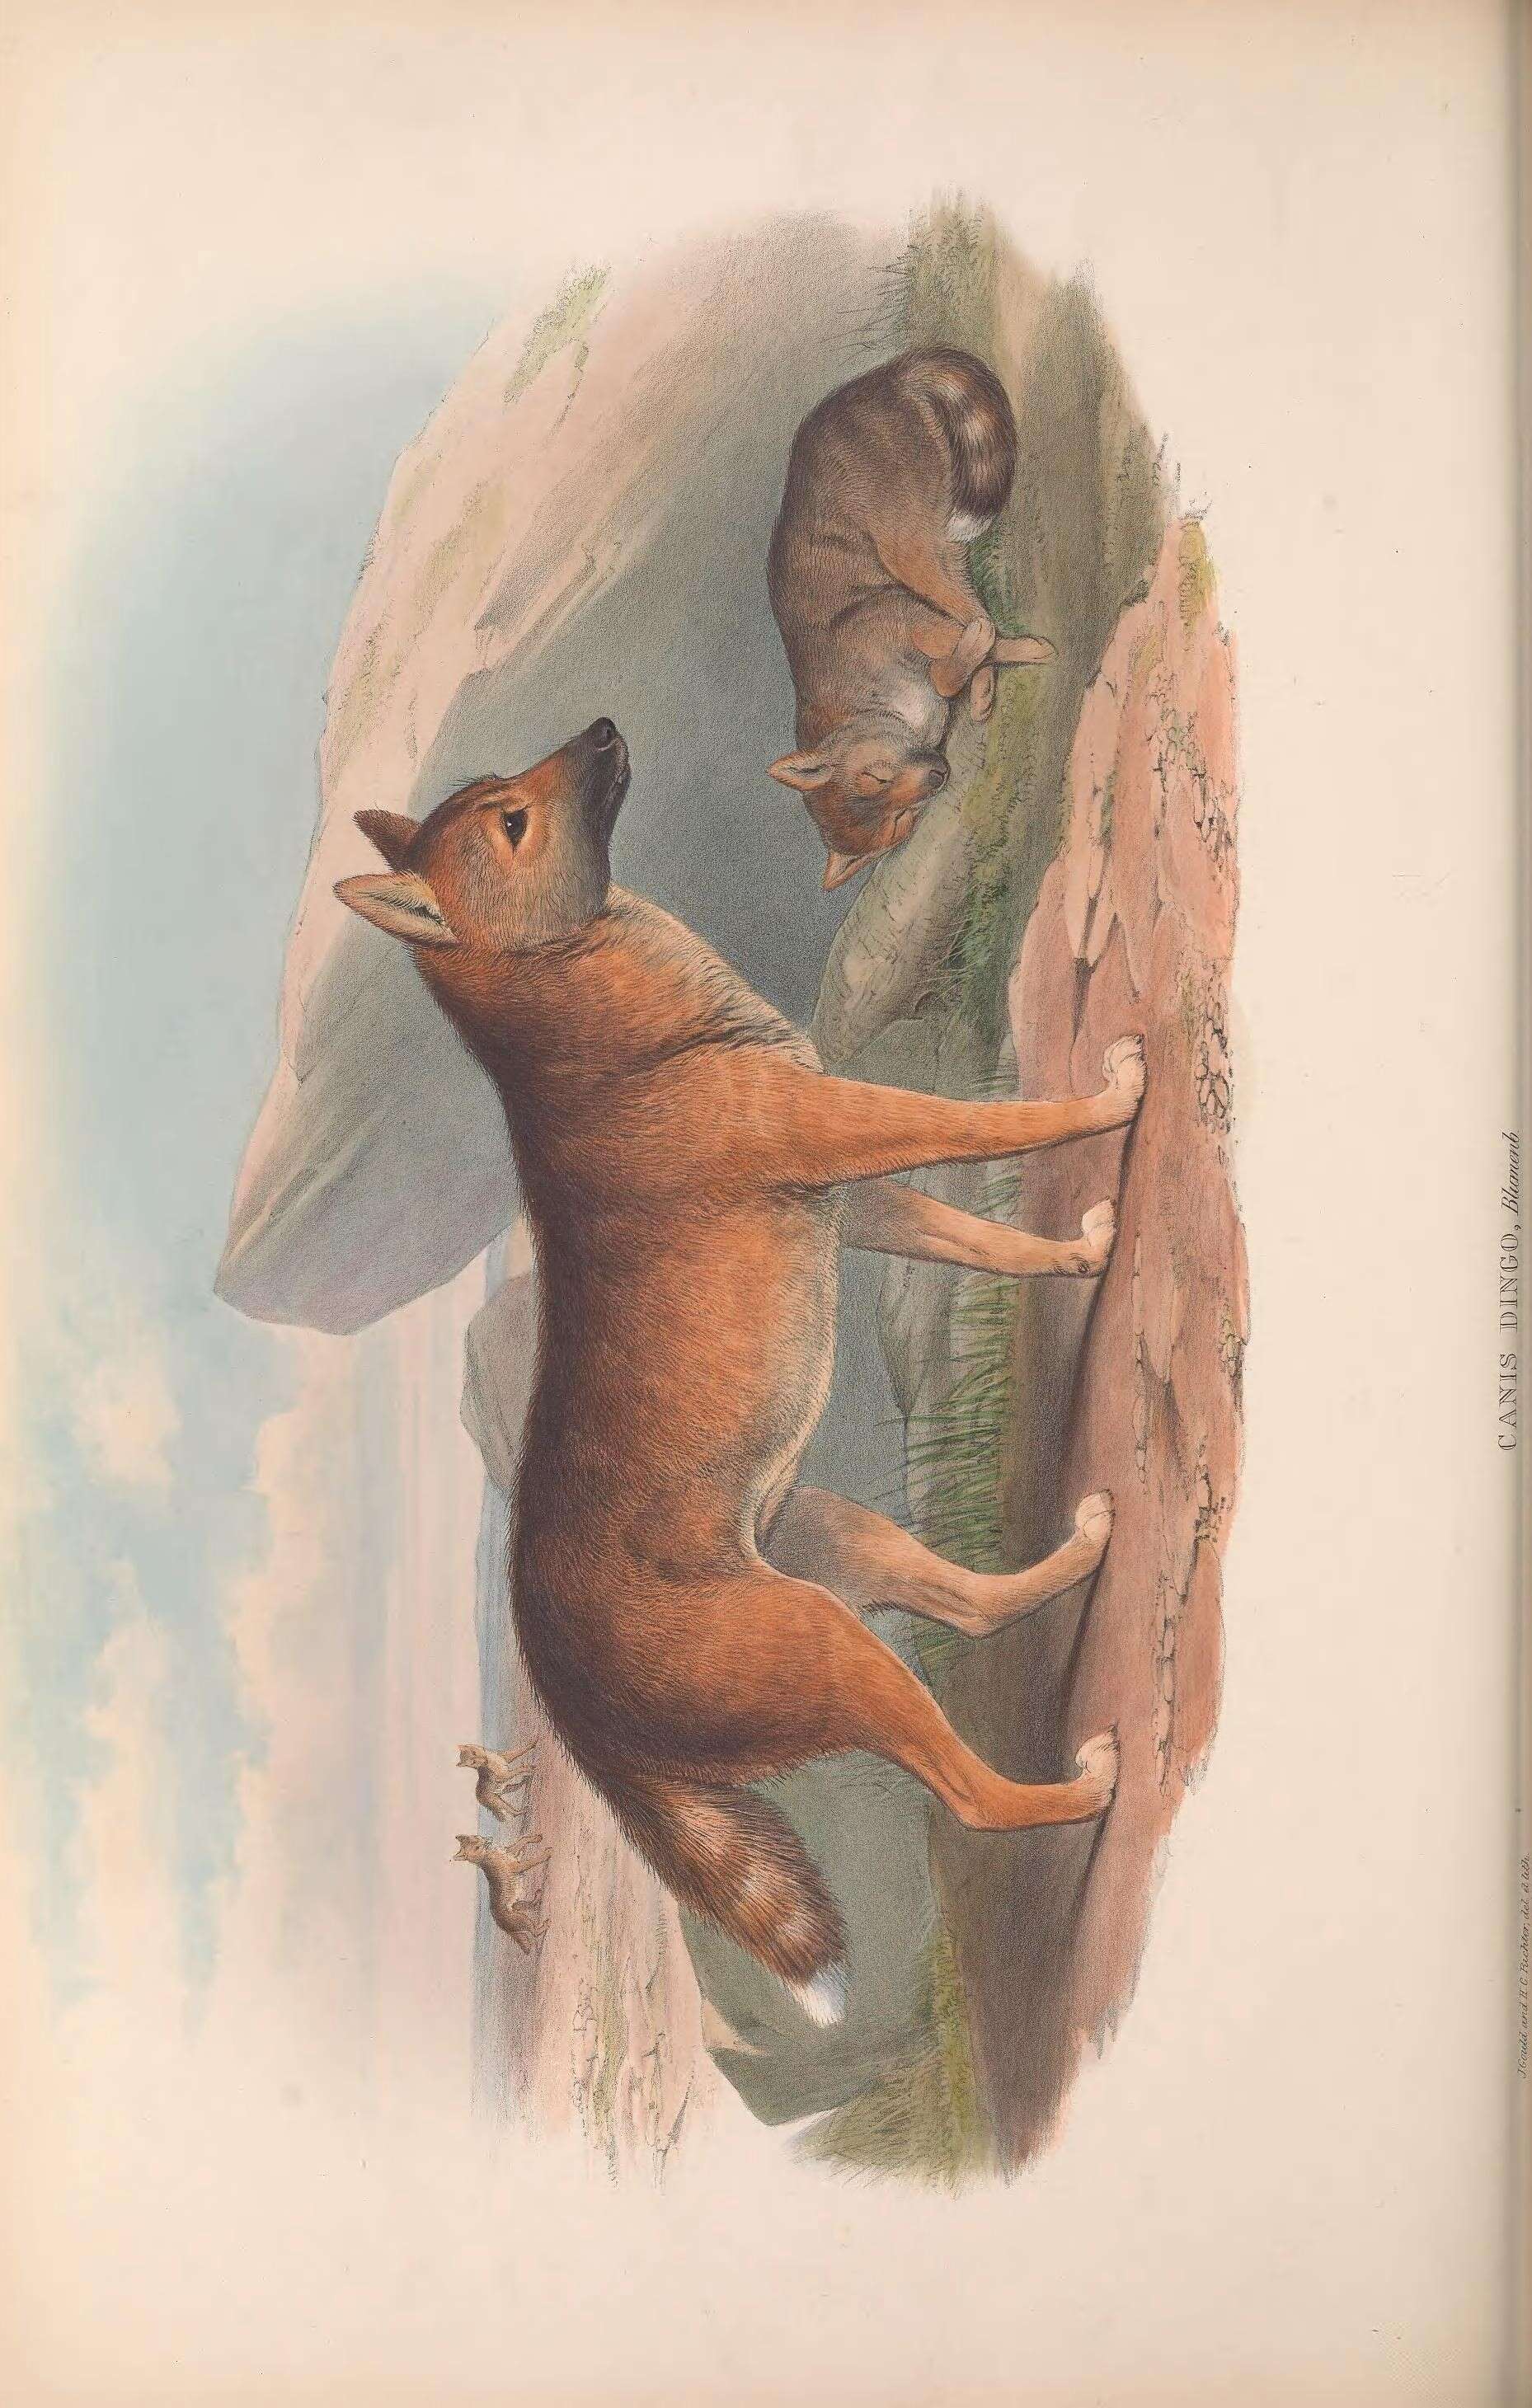 Image de Canis lupus dingo Meyer 1793